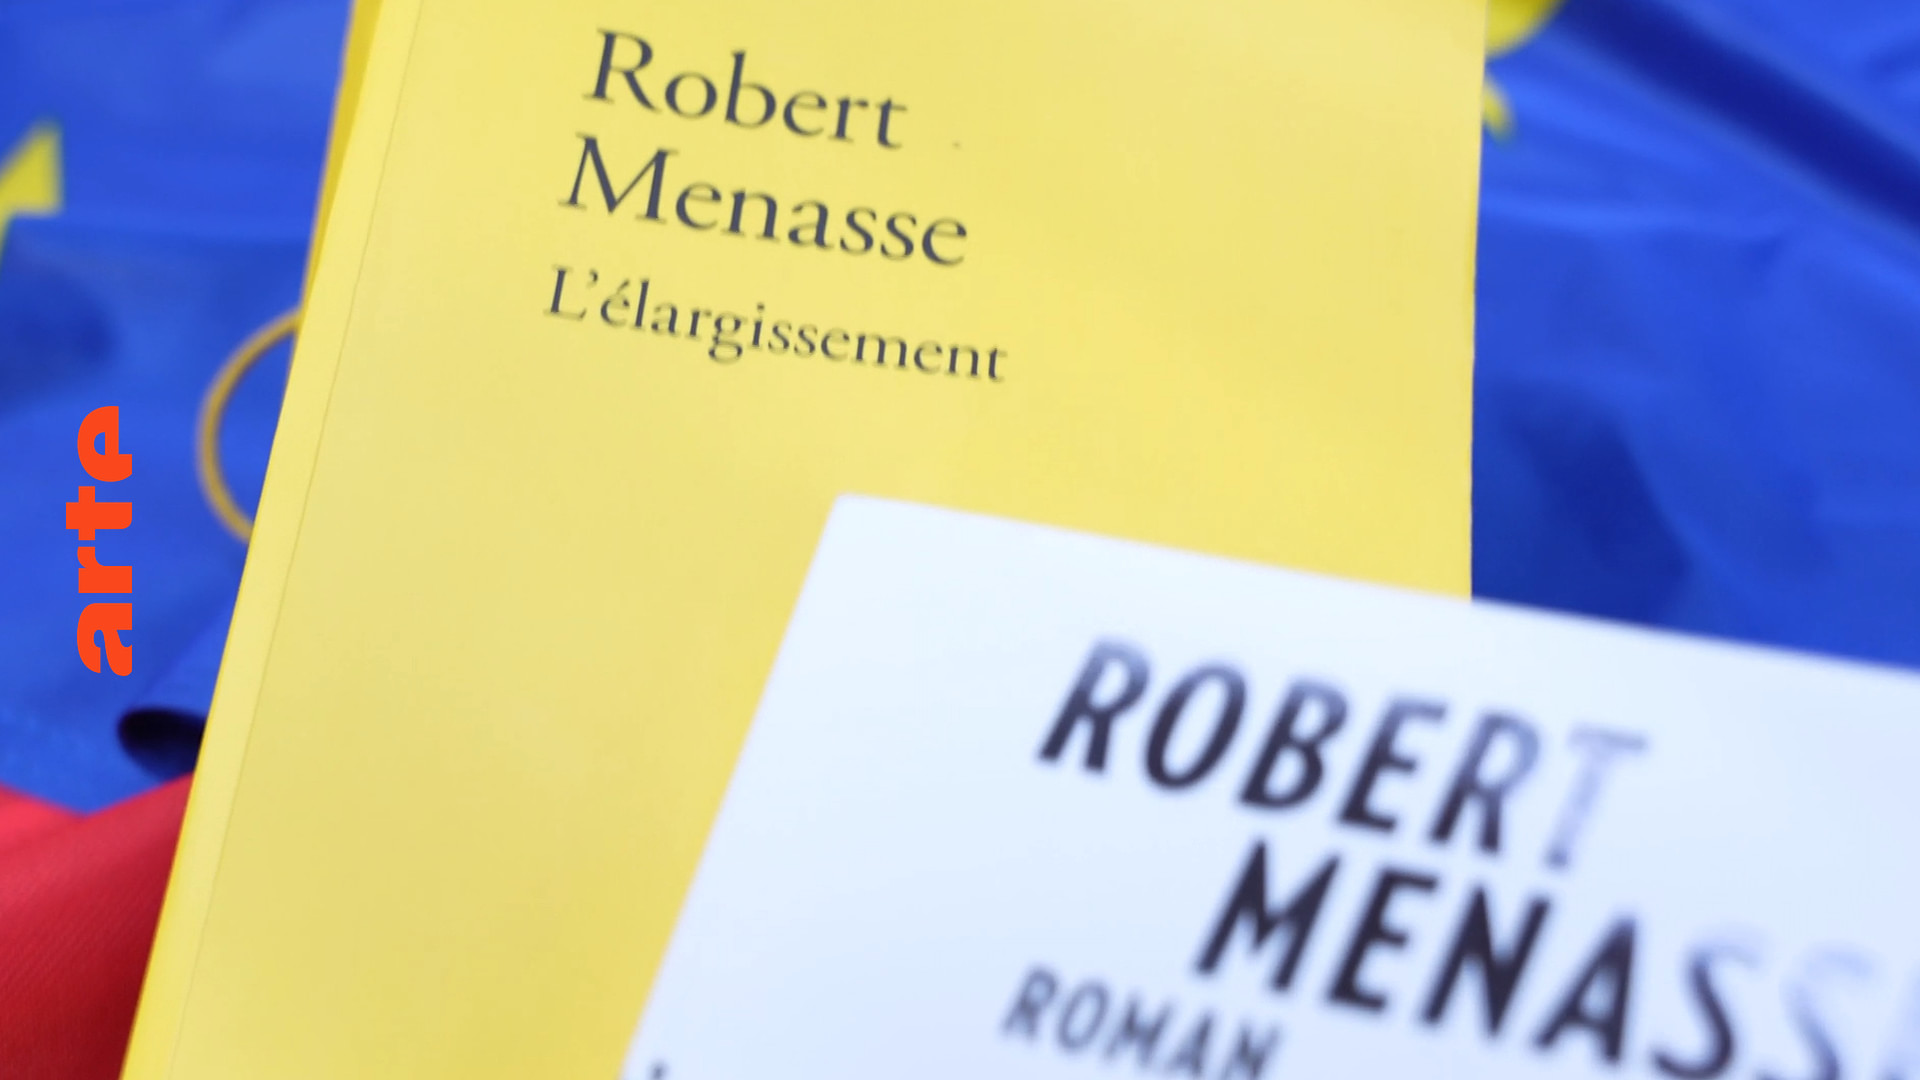 Europa im Roman: „Die Erweiterung“ von Robert Menasse